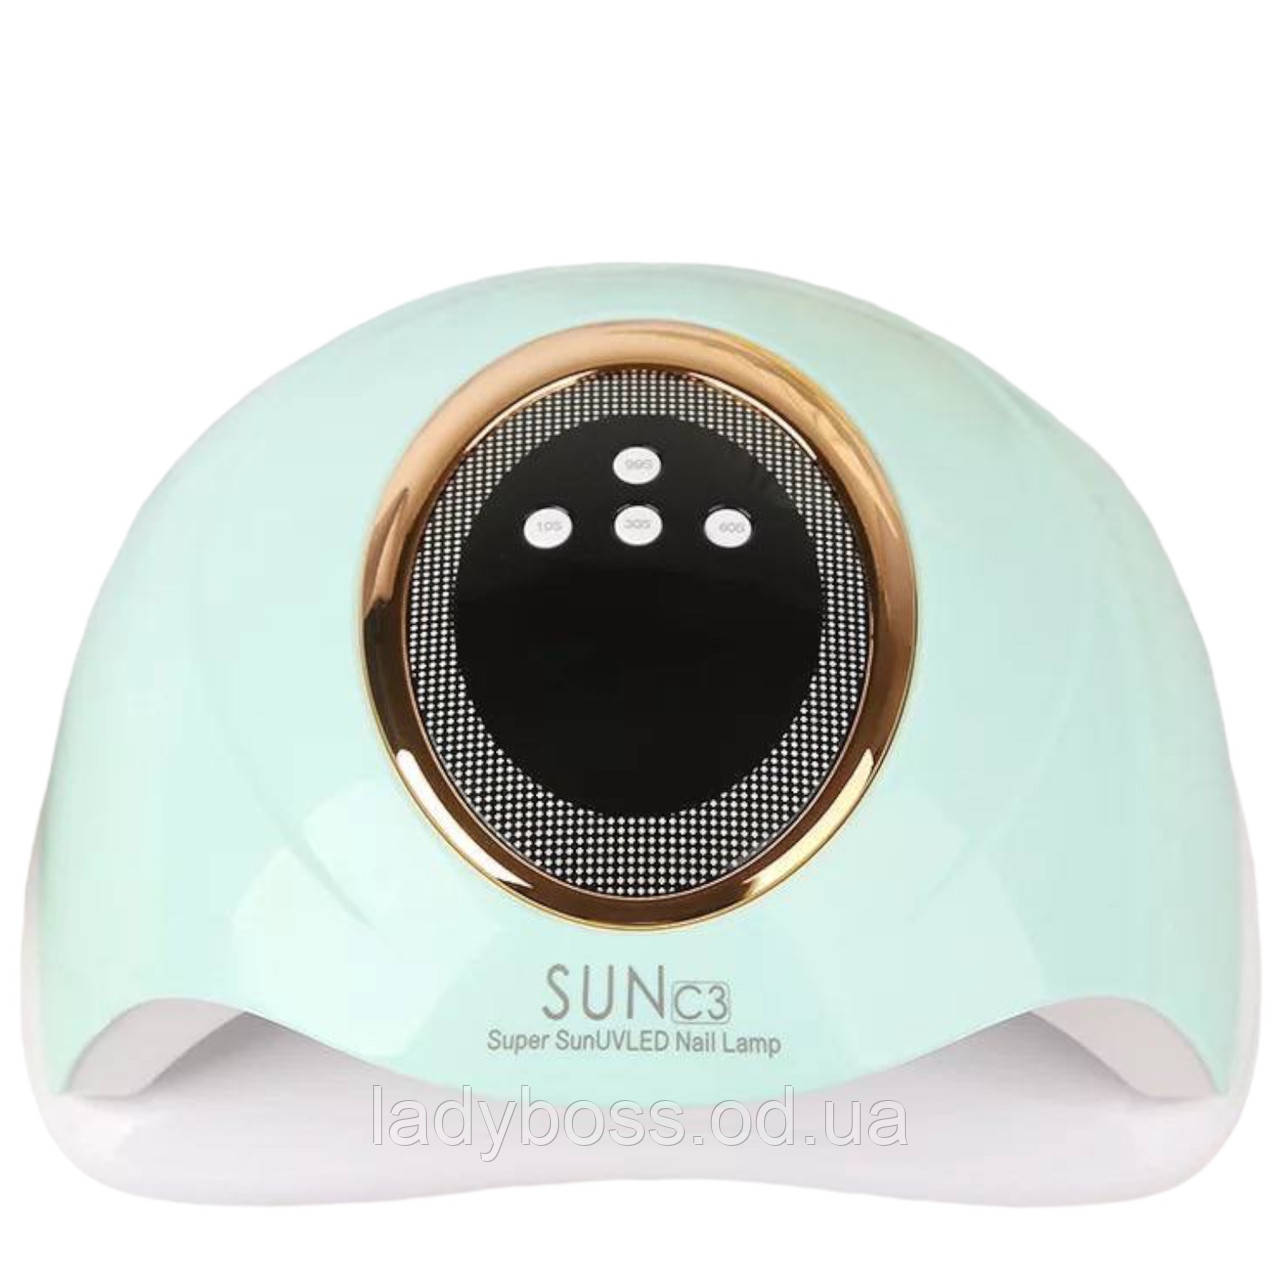 Професійна UV/LED лампа SUN C3 для нігтів з таймером та дисплеєм, 288 Вт.